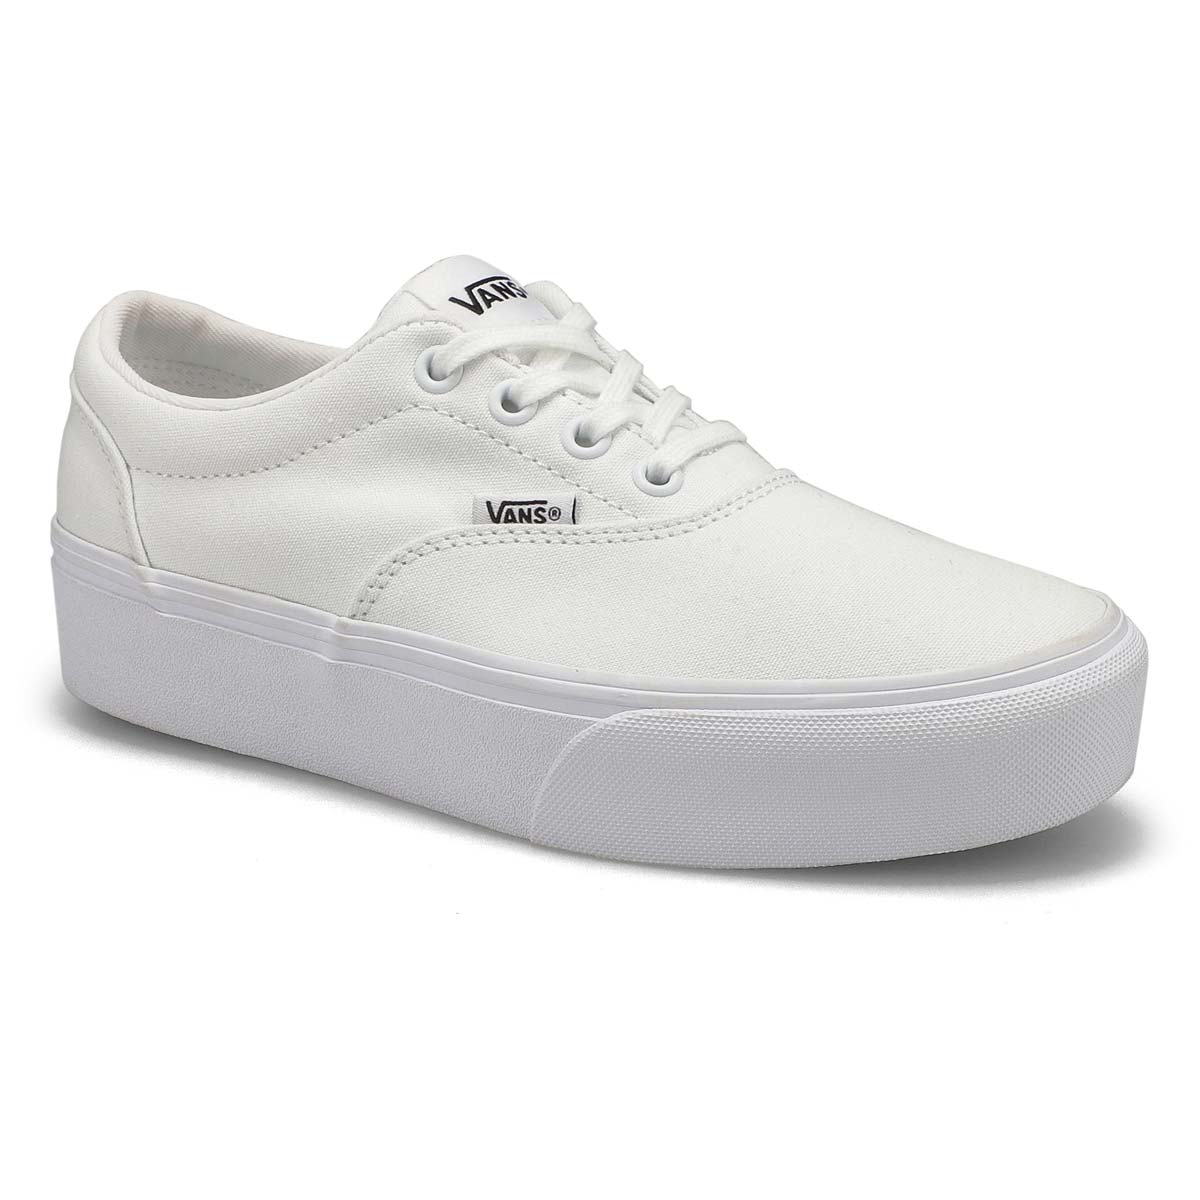 Vans Women's Doheny Platform Sneaker - White/ | SoftMoc.com